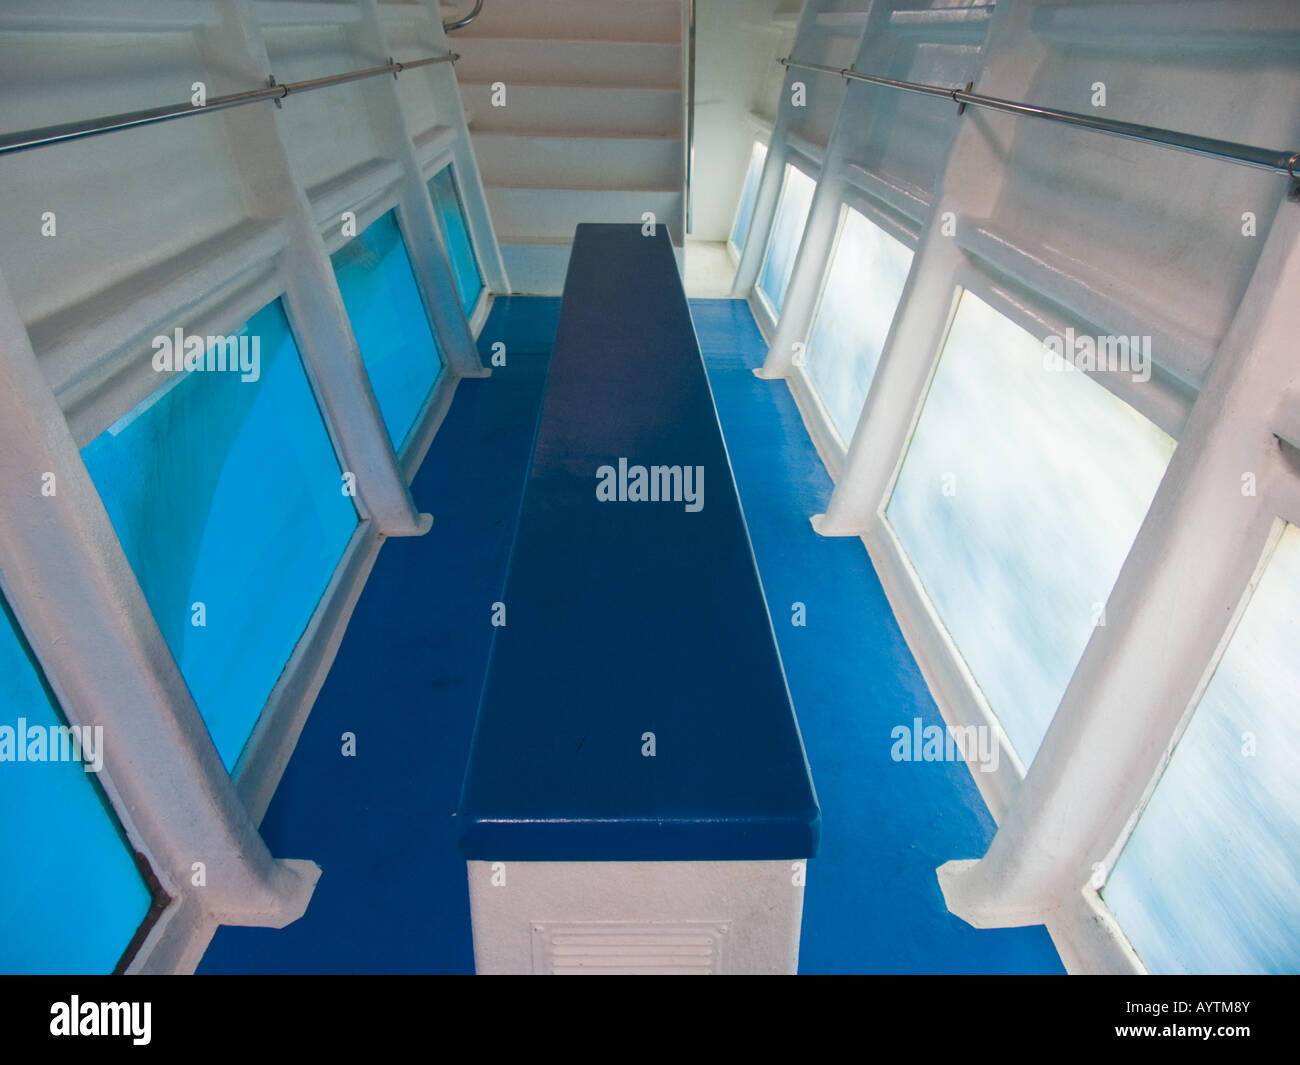 Underwater viewing area of glass bottom catamaran Stock Photo